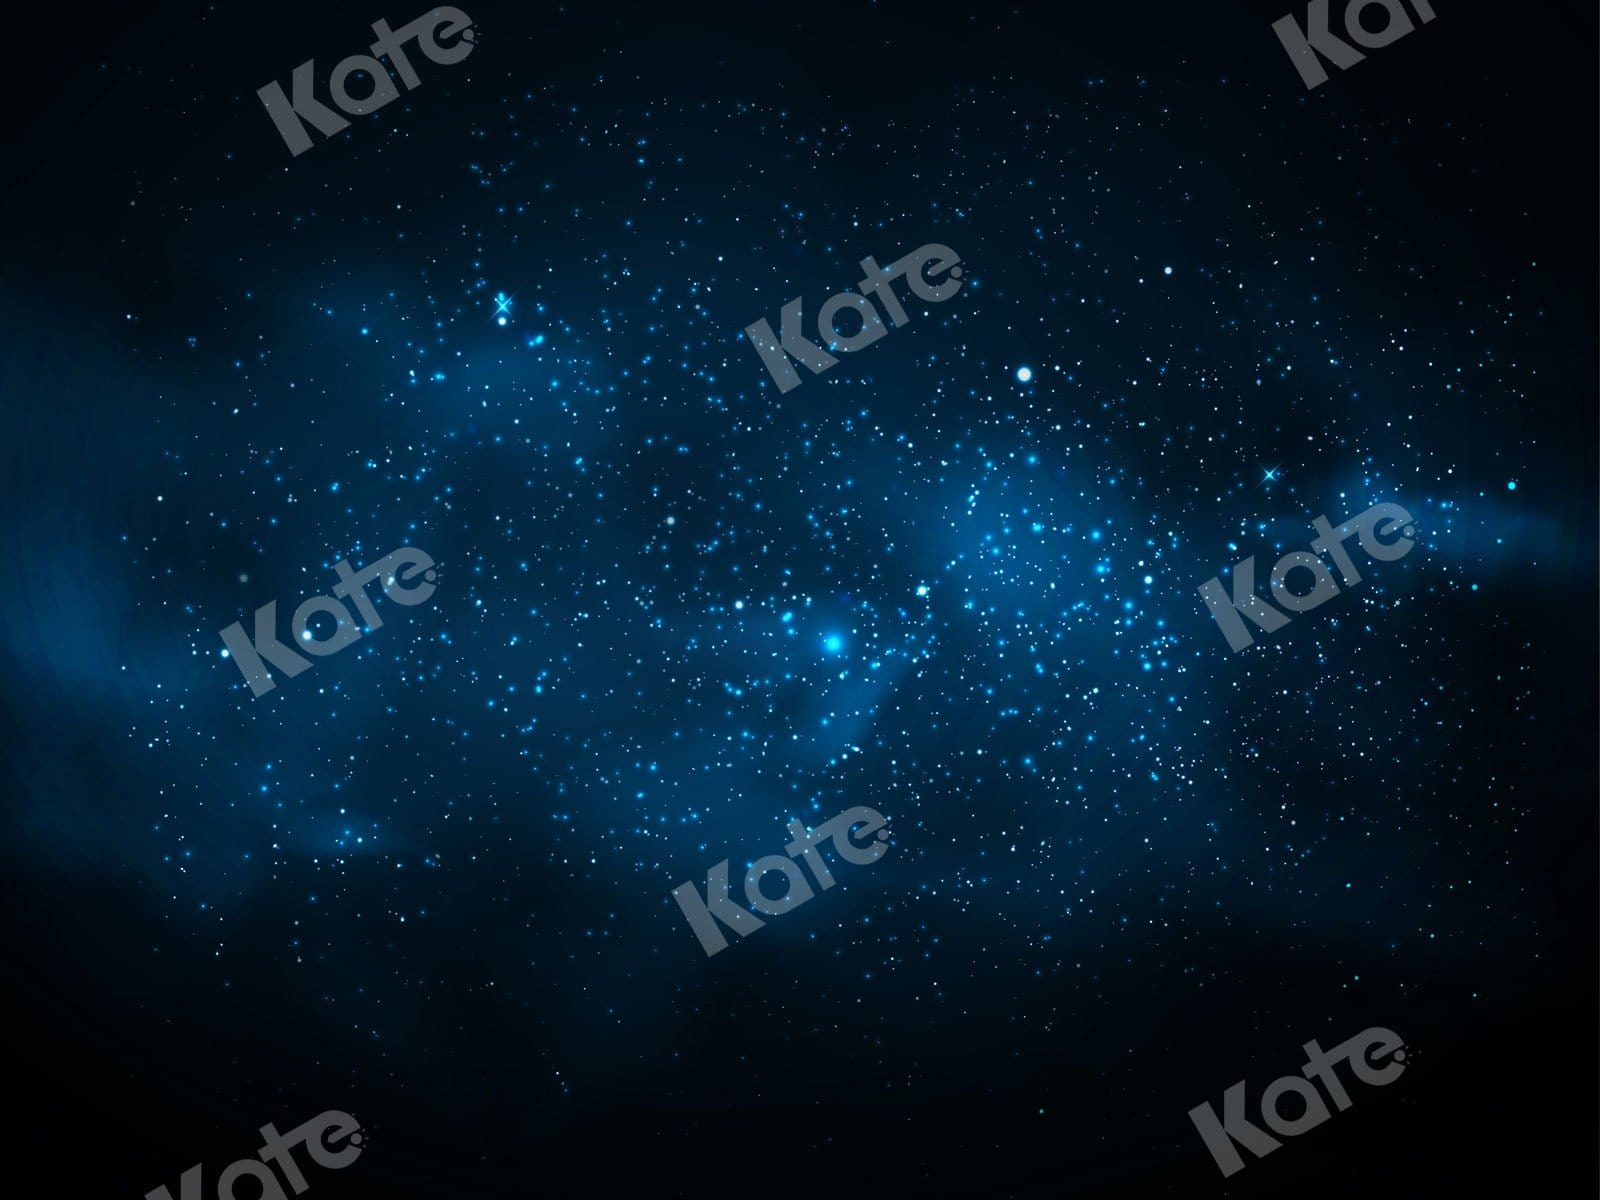 Kate Starry Night Backdrop Stars Universe Designed By JS Photography - Kate Backdrop